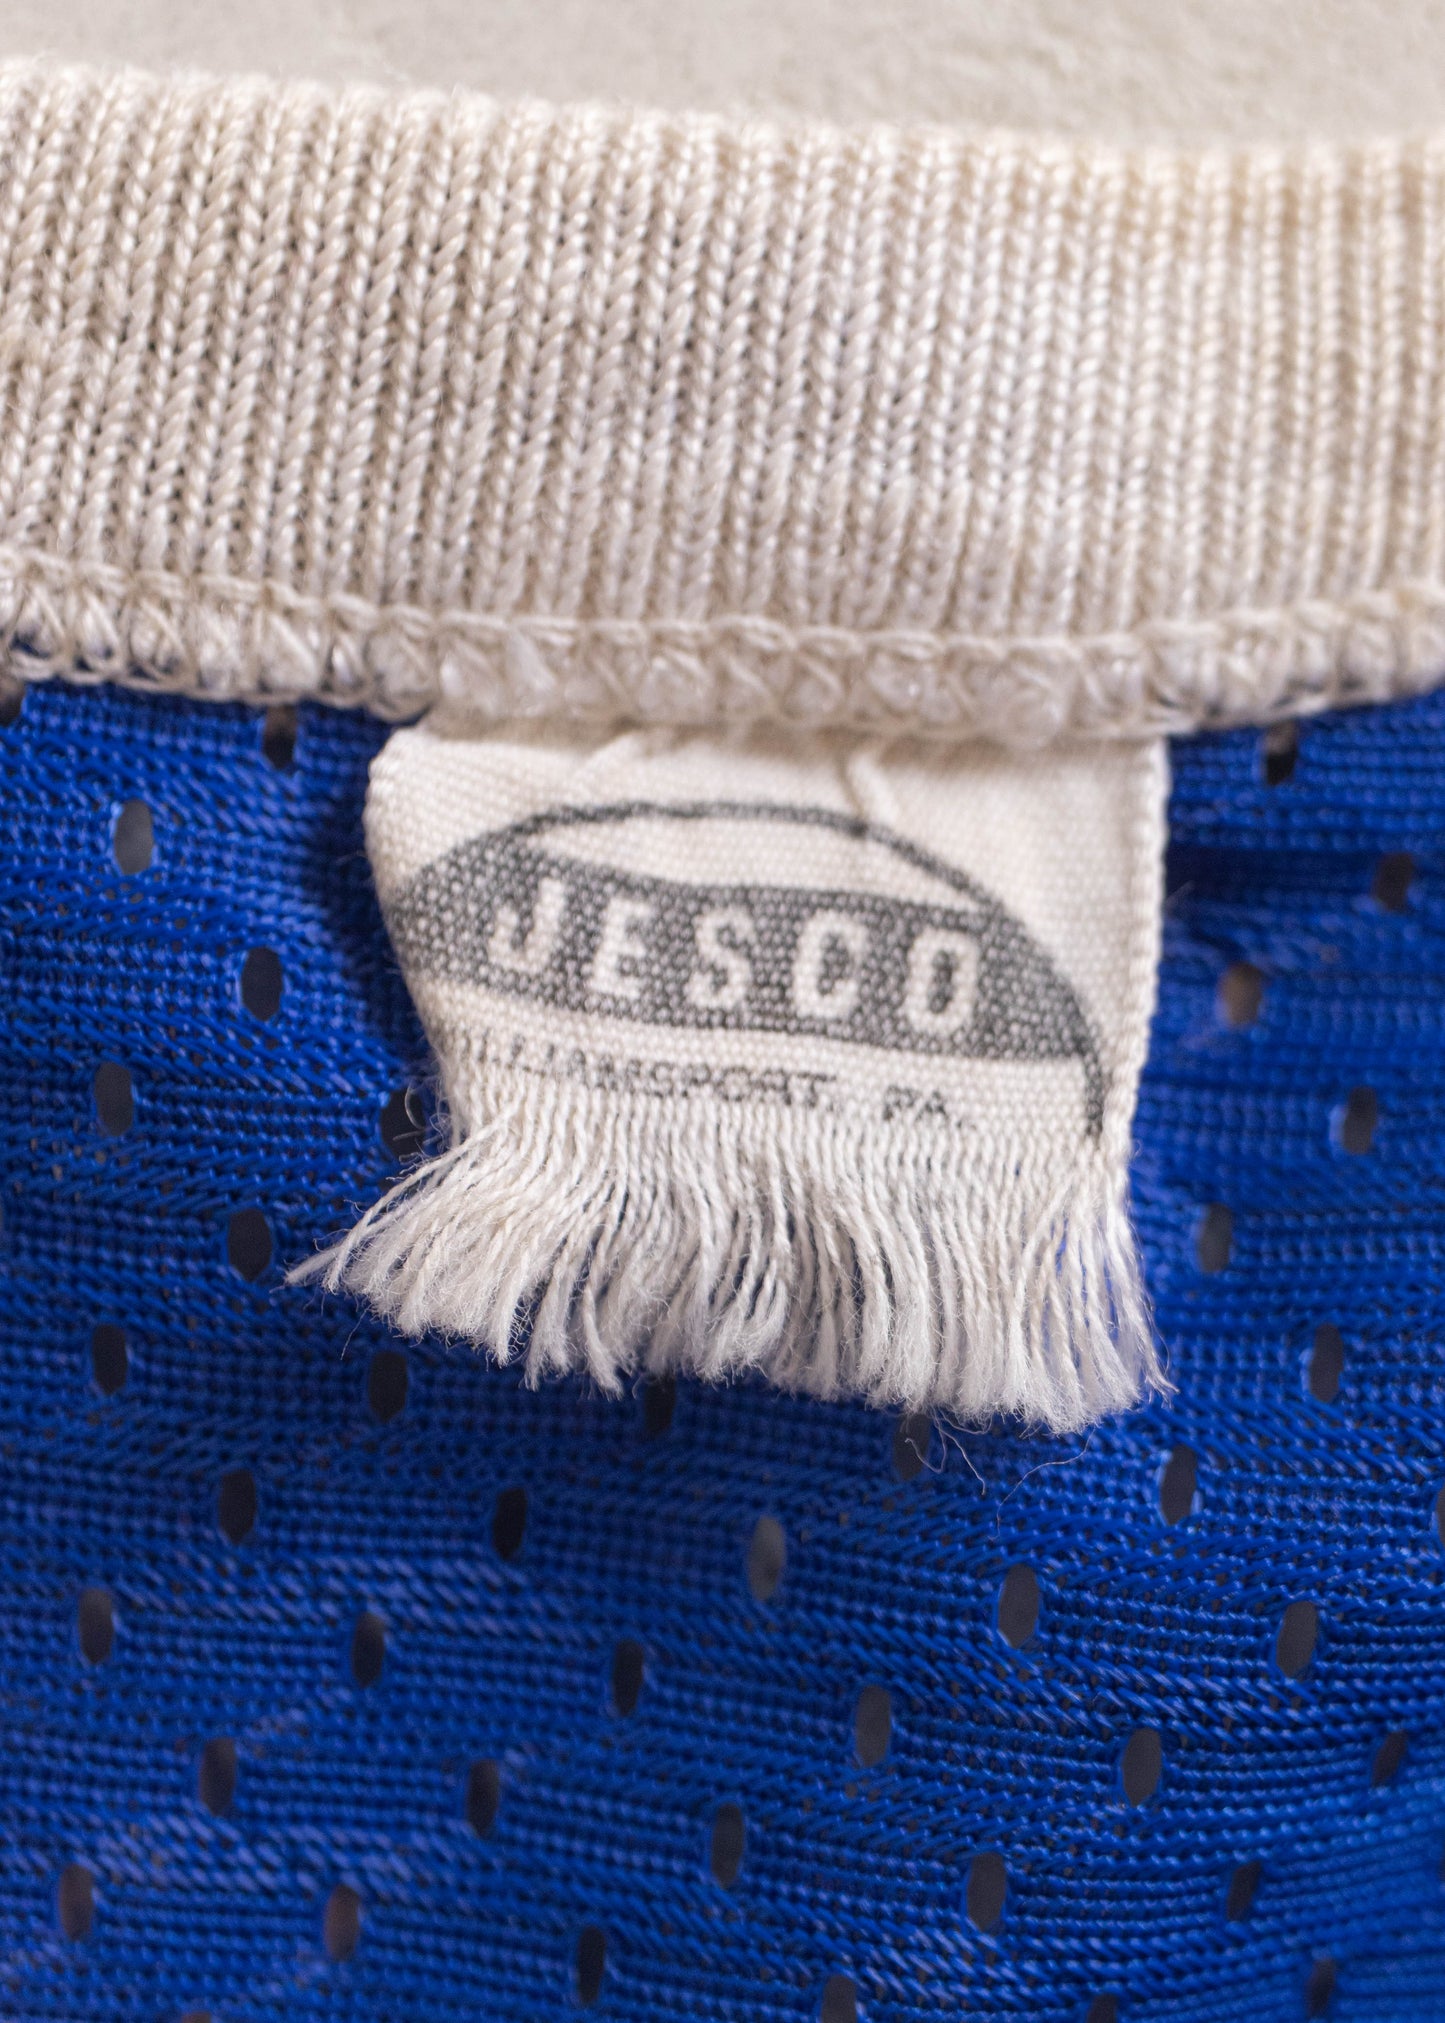 1980s Jesco Sportsman Shop Mesh Sport Jersey Size S/M